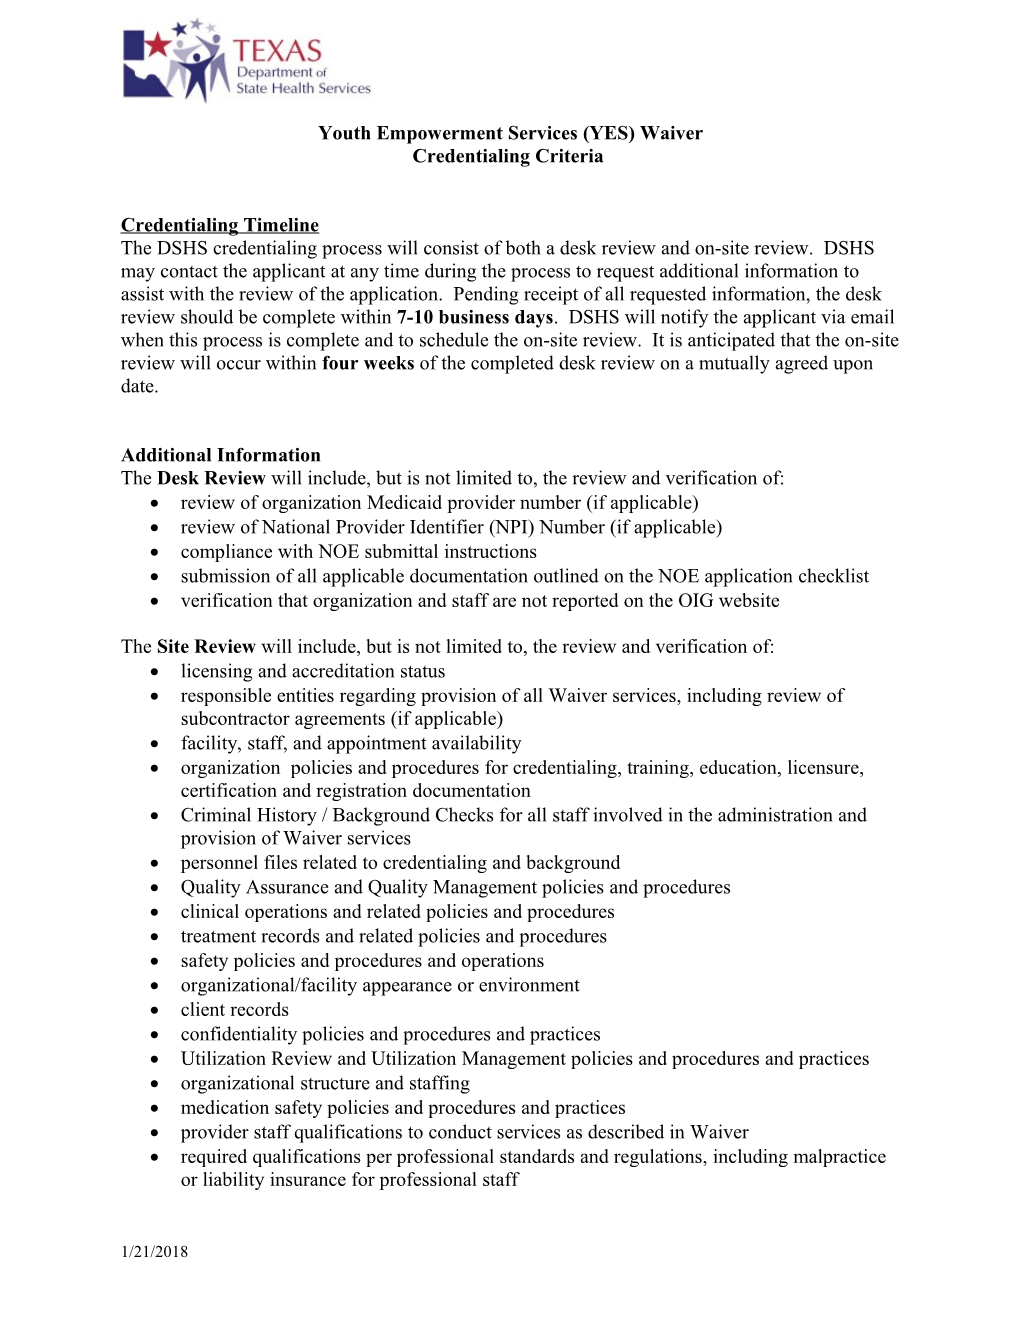 Provider Credentialing Criteria June 2009